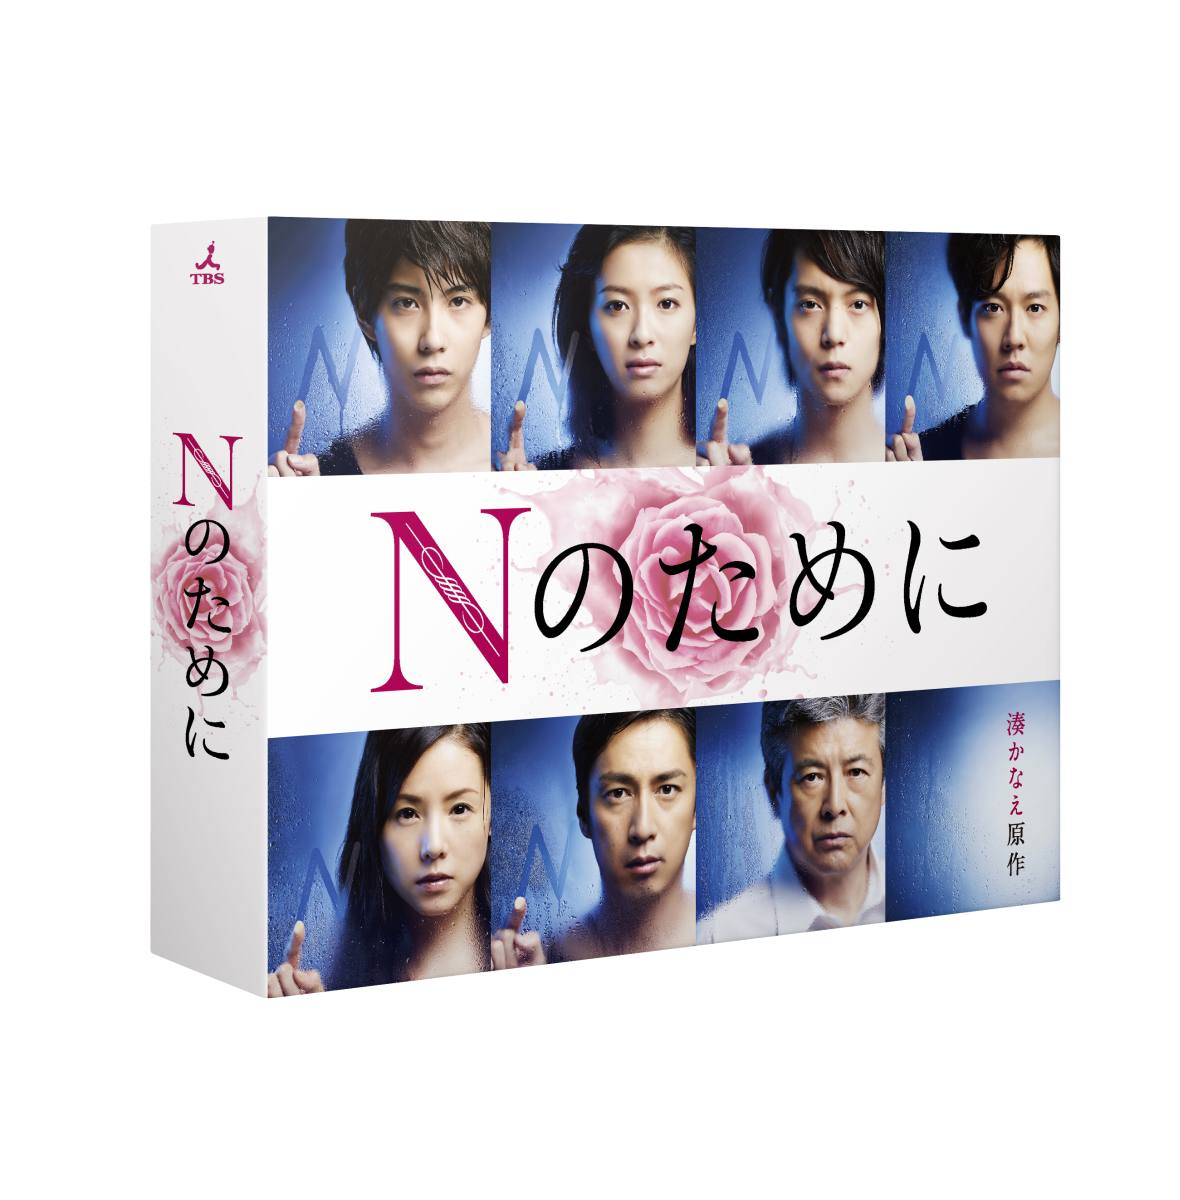 楽天ブックス: Nのために DVD-BOX - 榮倉奈々 - 4562474162944 : DVD